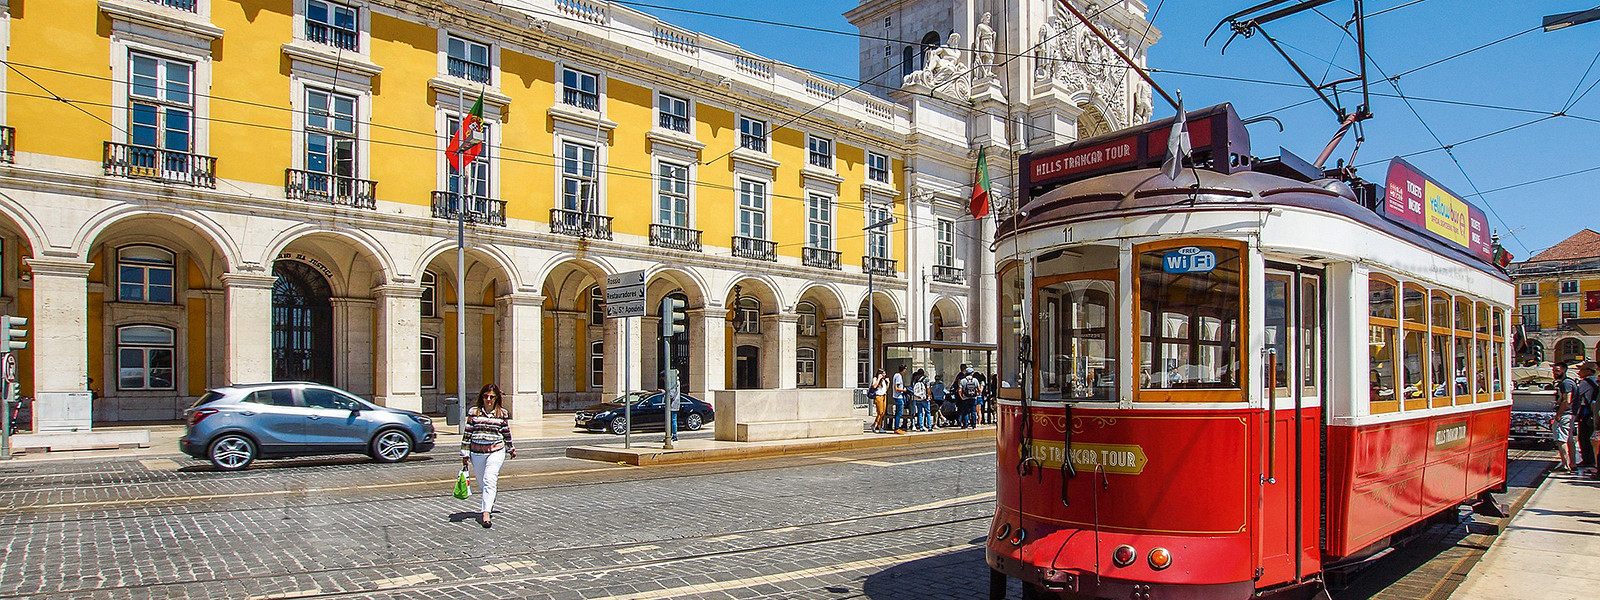 Журнал/Почему жить в Португалии на самом деле не очень: 6 аргументов